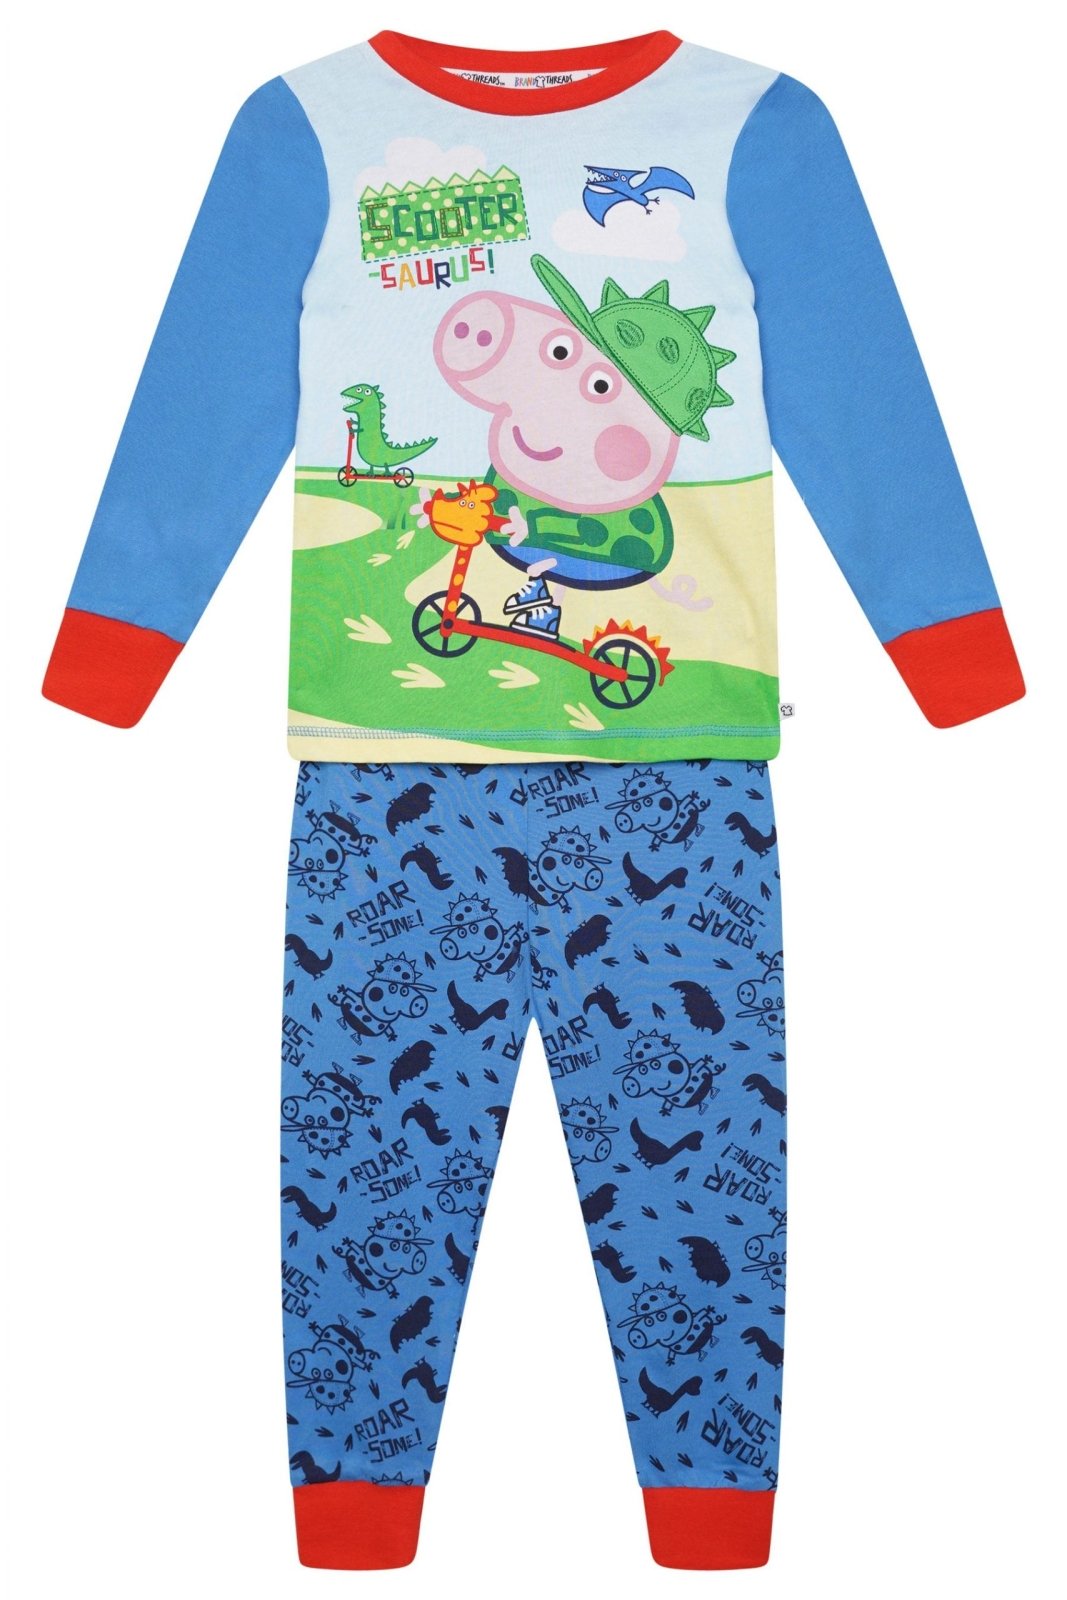 George Pig Boys Pyjamas - Brand Threads